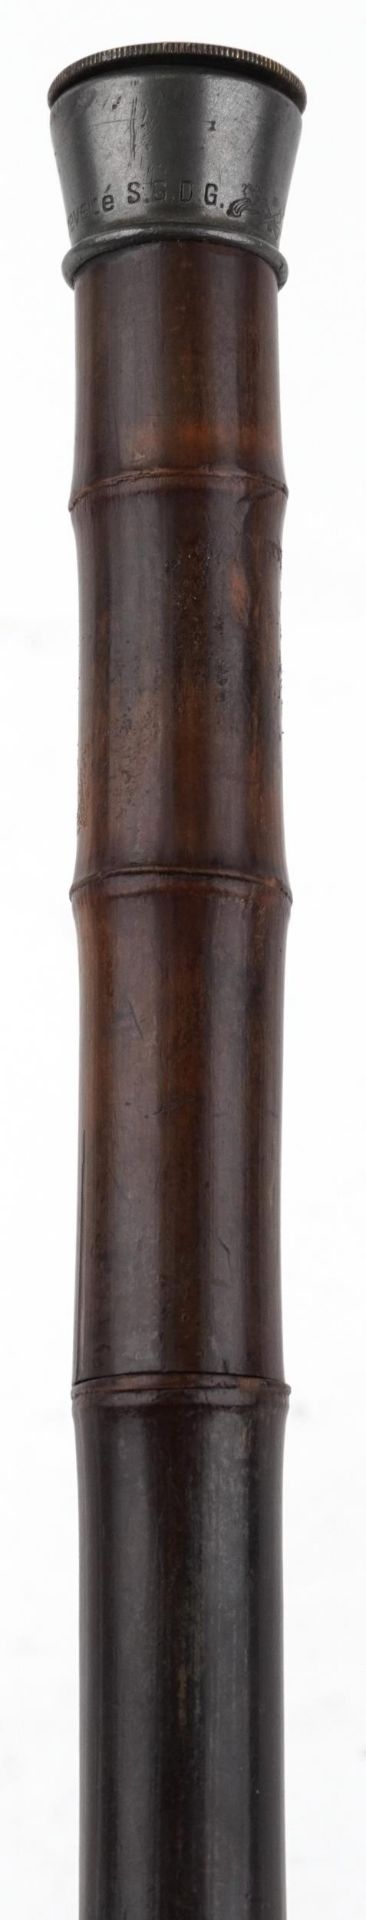 19th century bamboo single shot walking stick gun with pewter mount impressed Patent Brevete SGDG, - Bild 2 aus 6